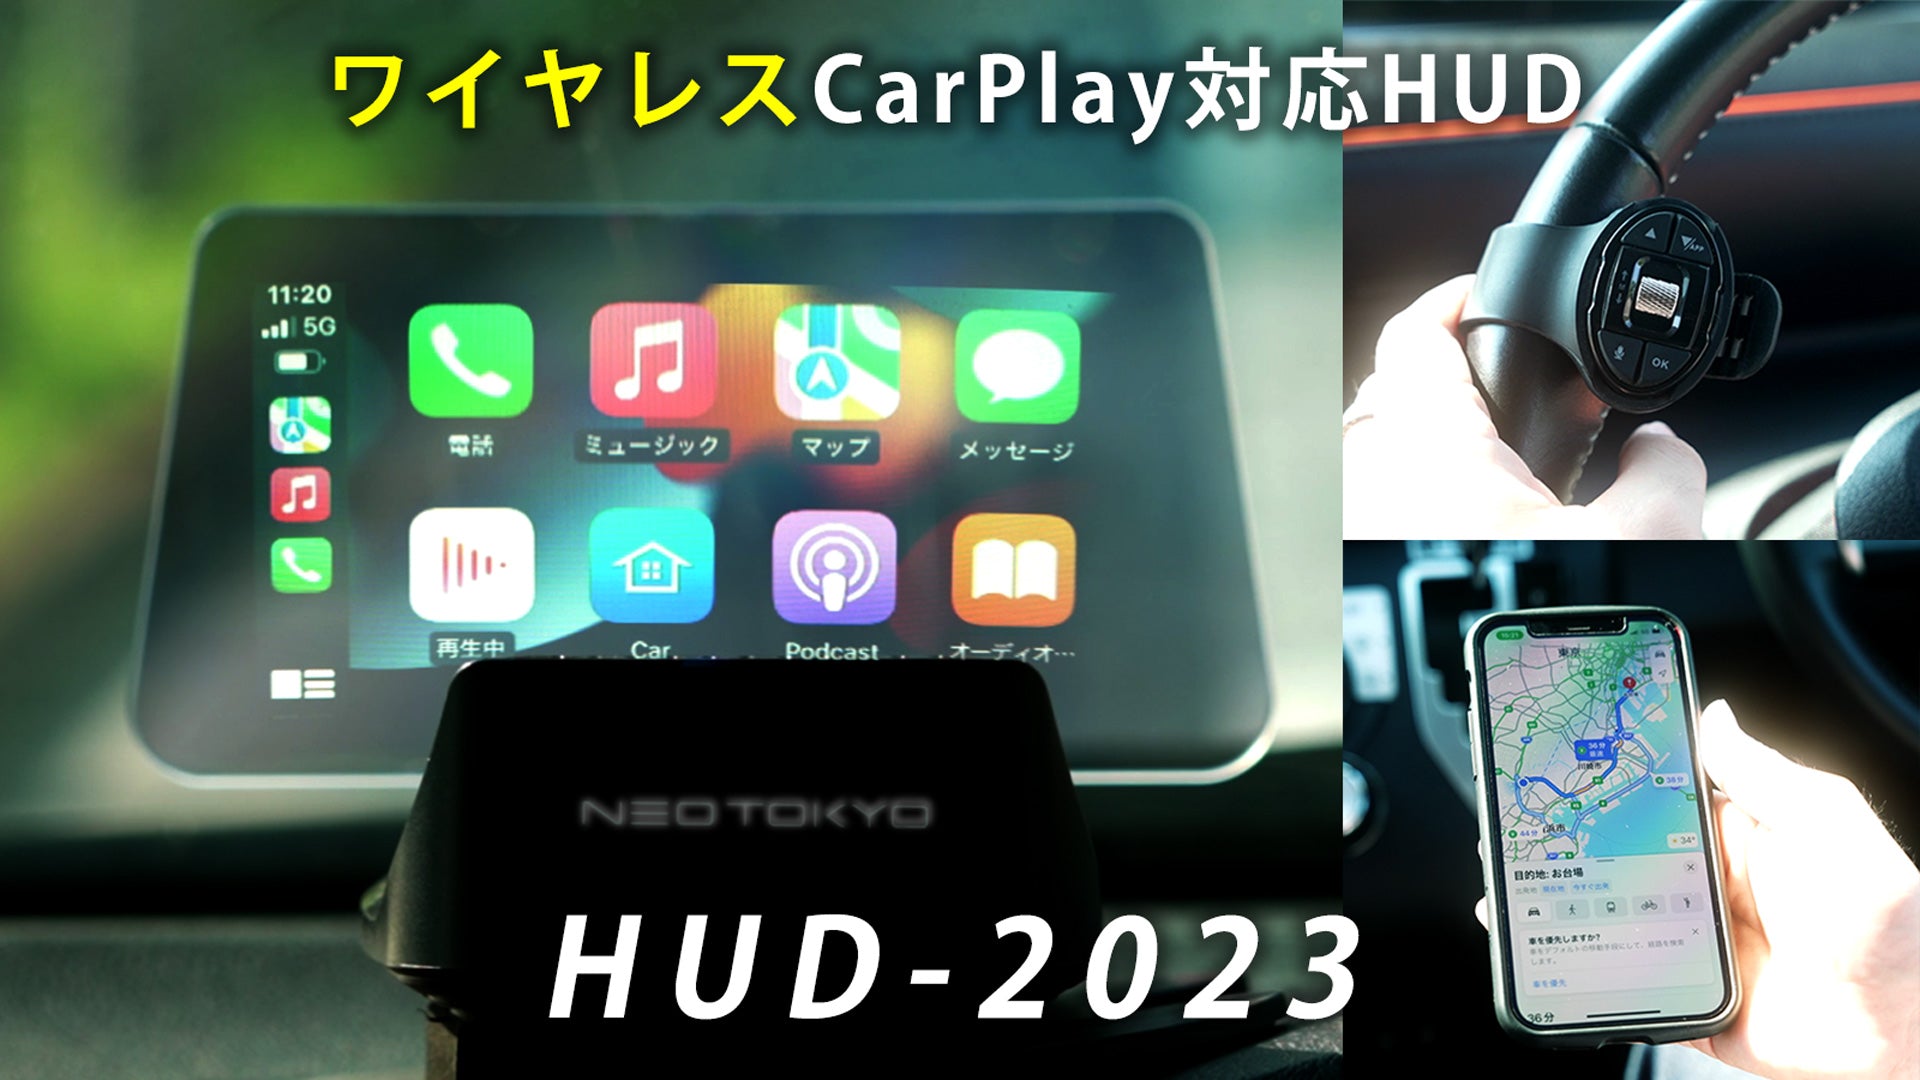 HUD-2023